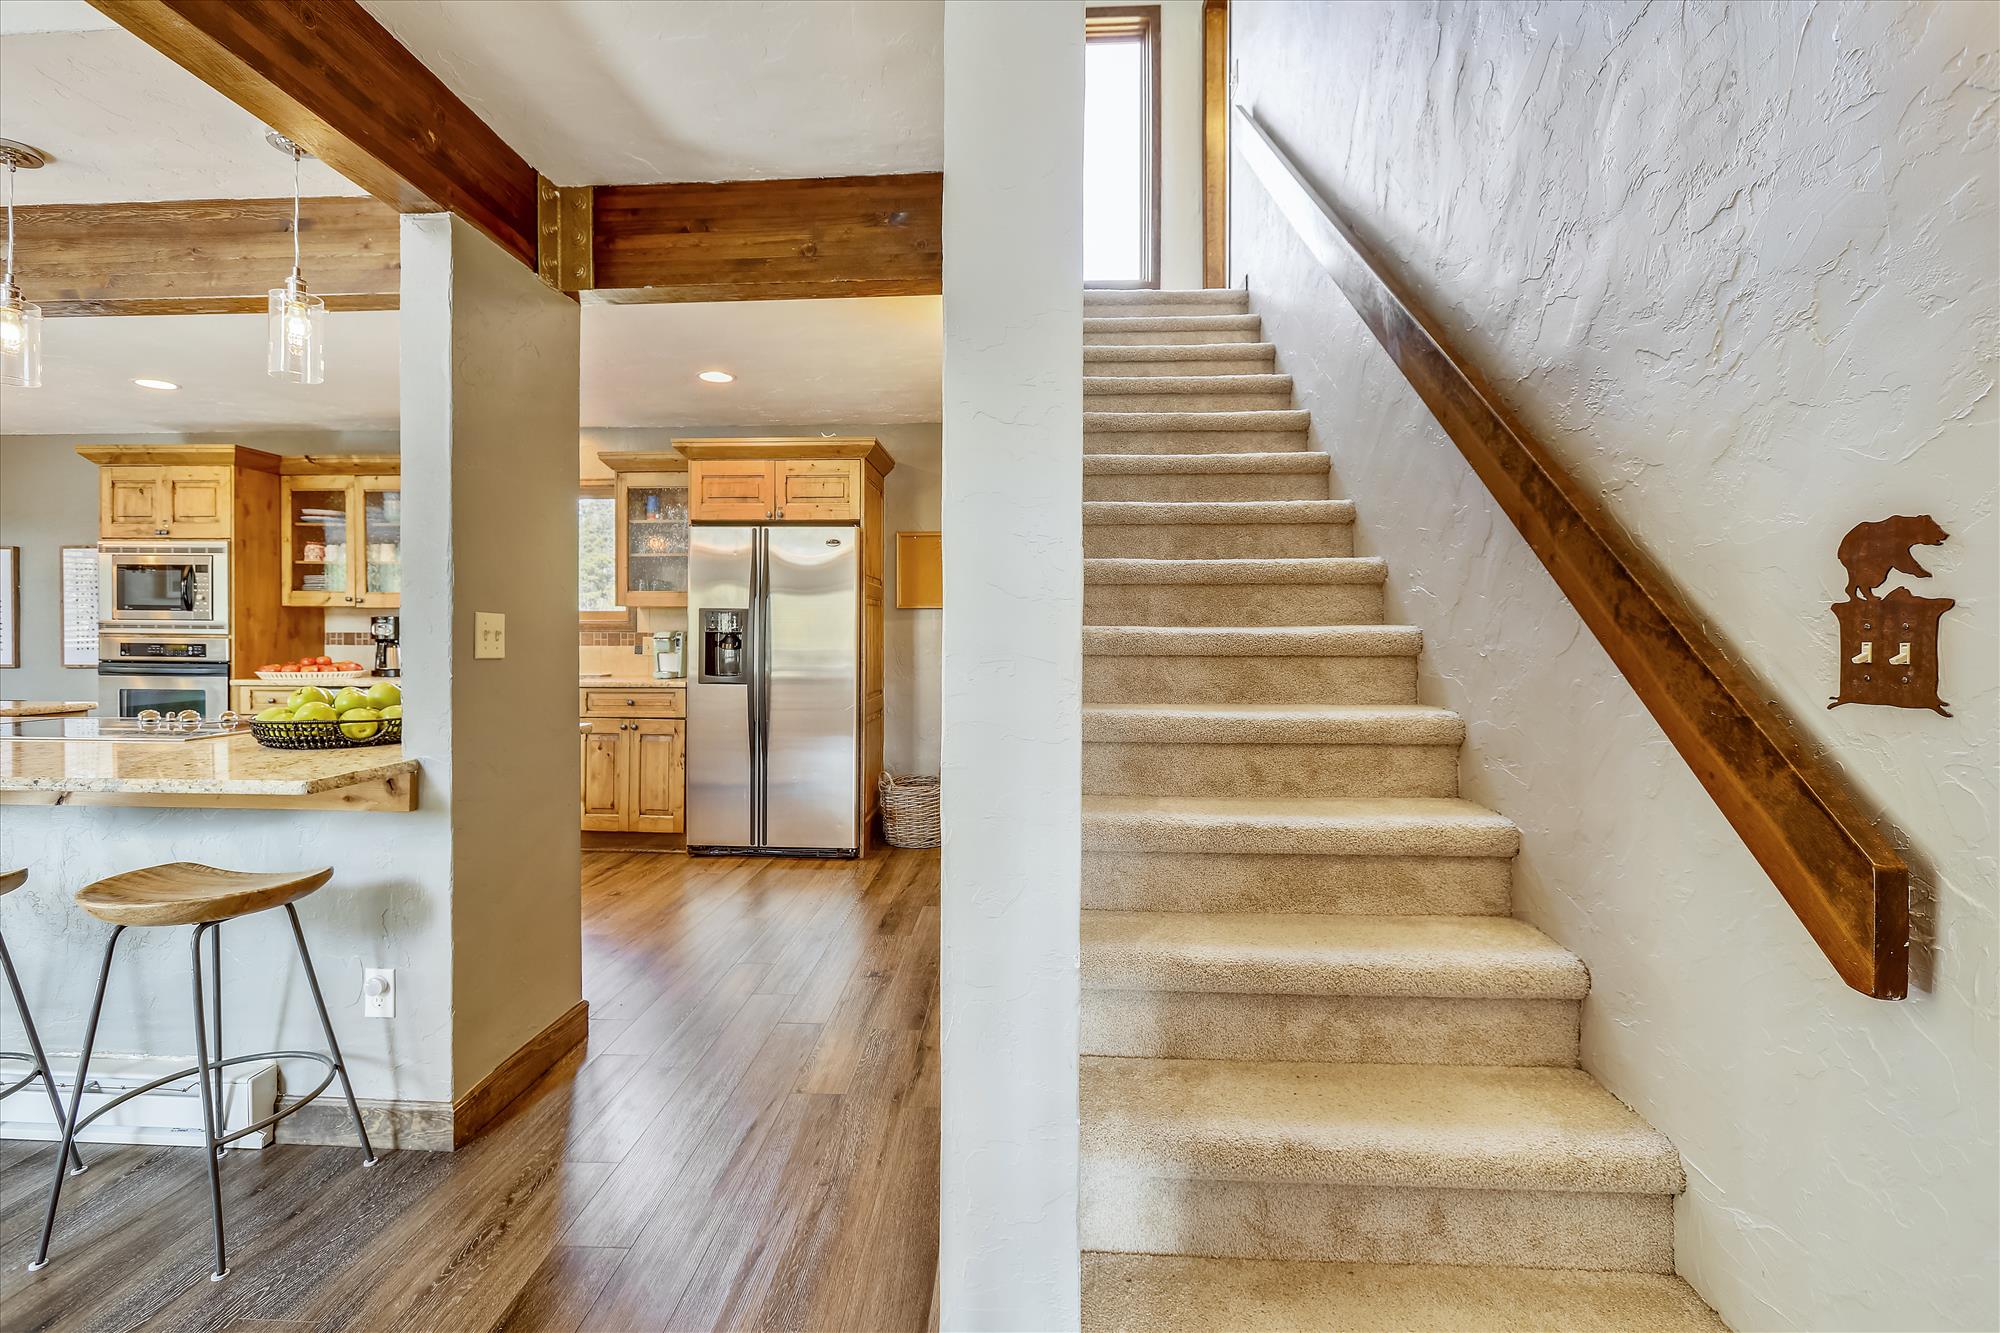 Stairway to top level with two bedrooms - Calderon De La Breck Breckenridge Vacation Rental